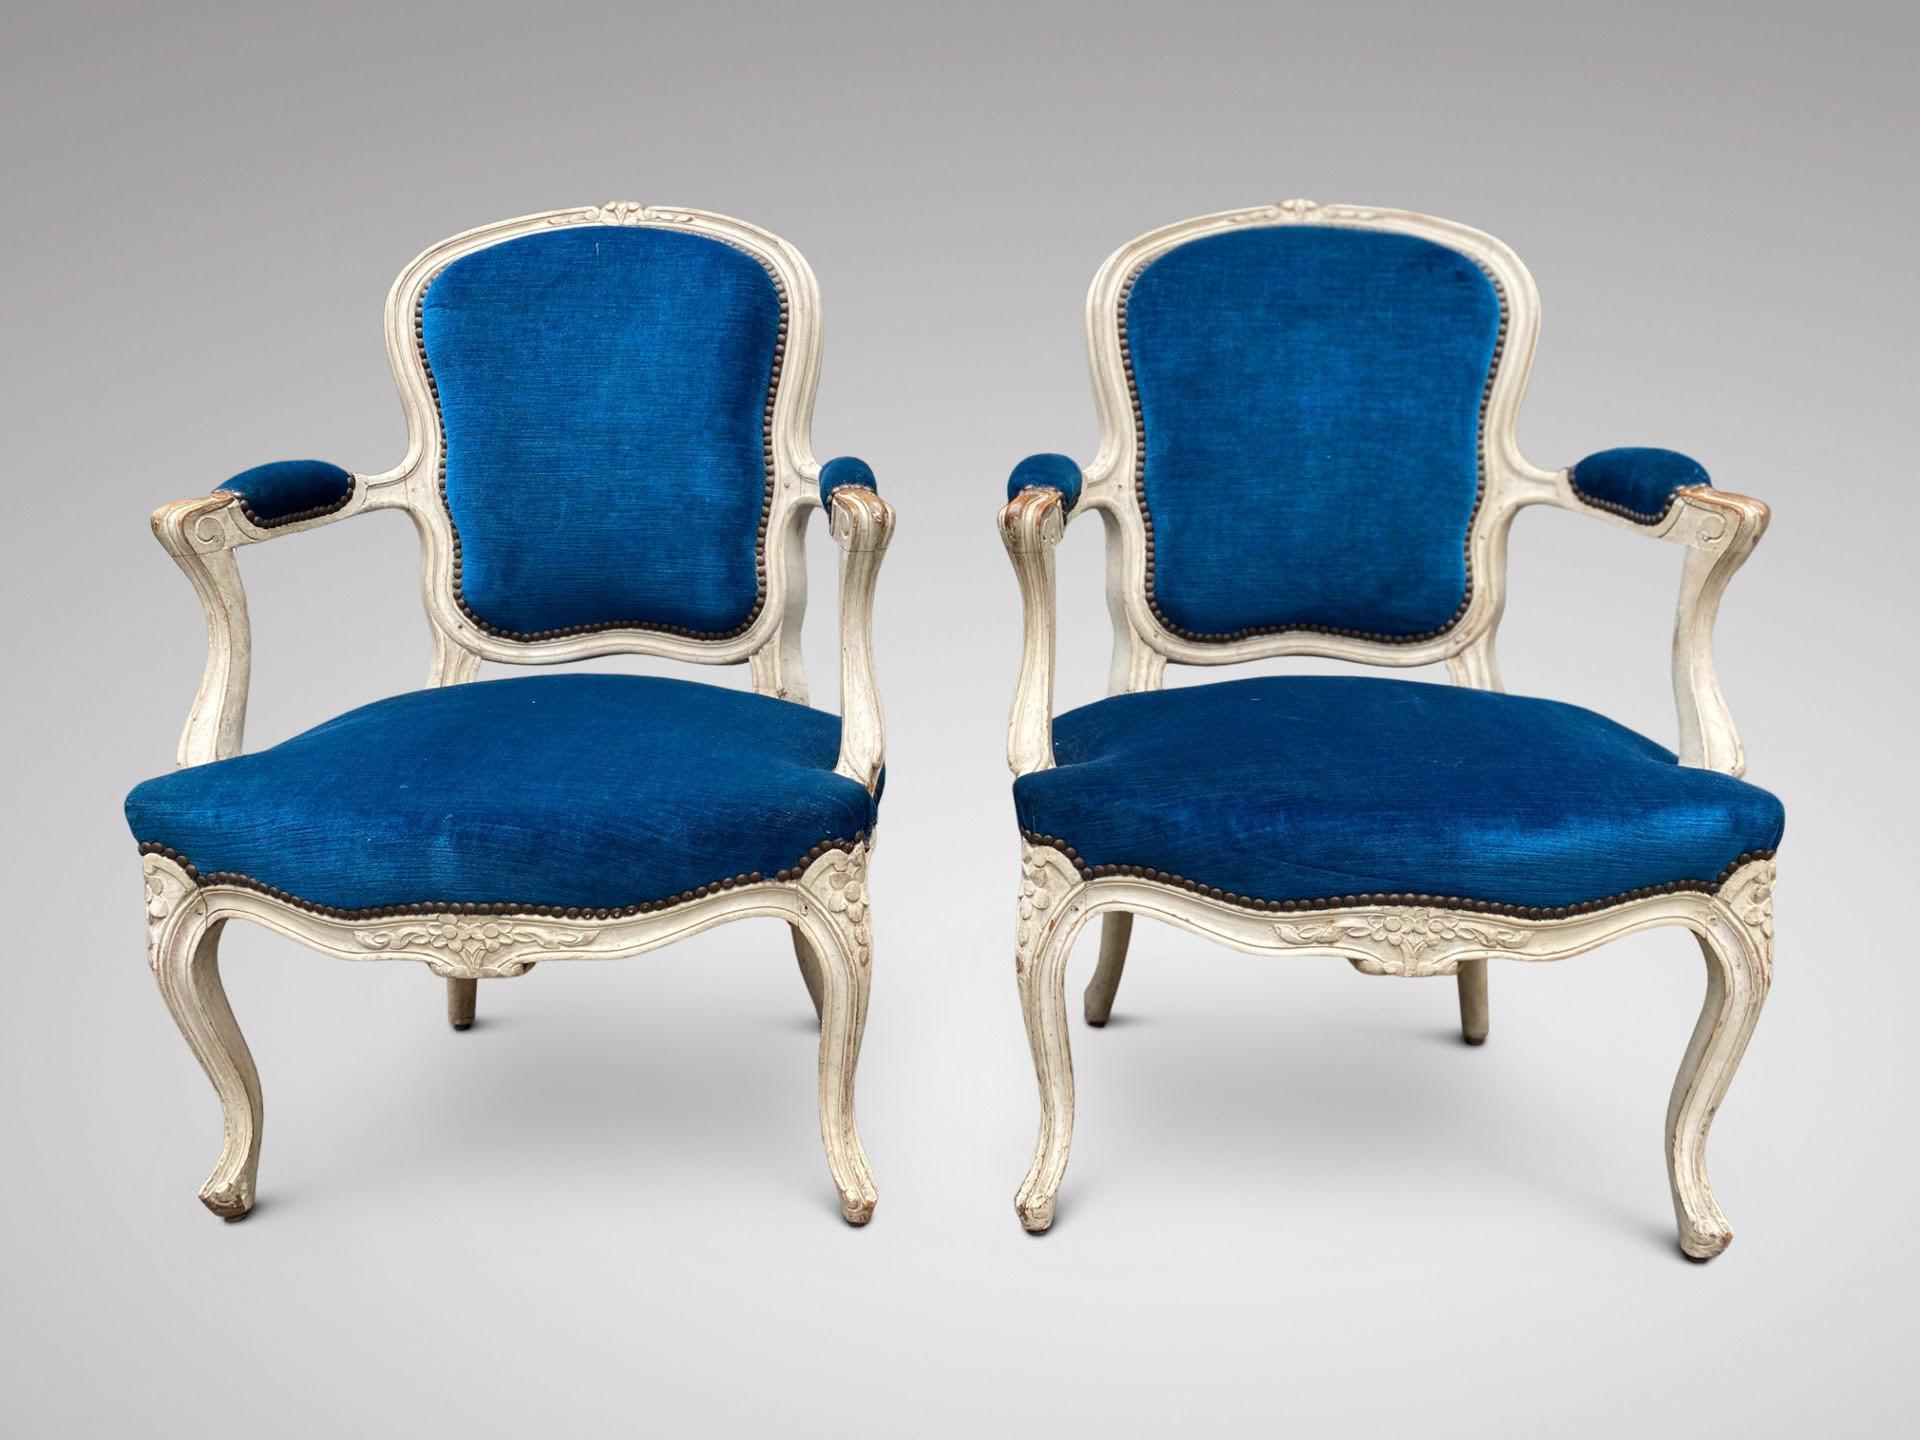 Paire de fauteuils bergères Louis XV en noyer patiné, datant de la fin du XIXe siècle, tapissés d'un tissu en velours bleu, avec une décoration sculptée sur le cadre. Fauteuils très confortables. Superbe patine.

Les dimensions sont les suivantes